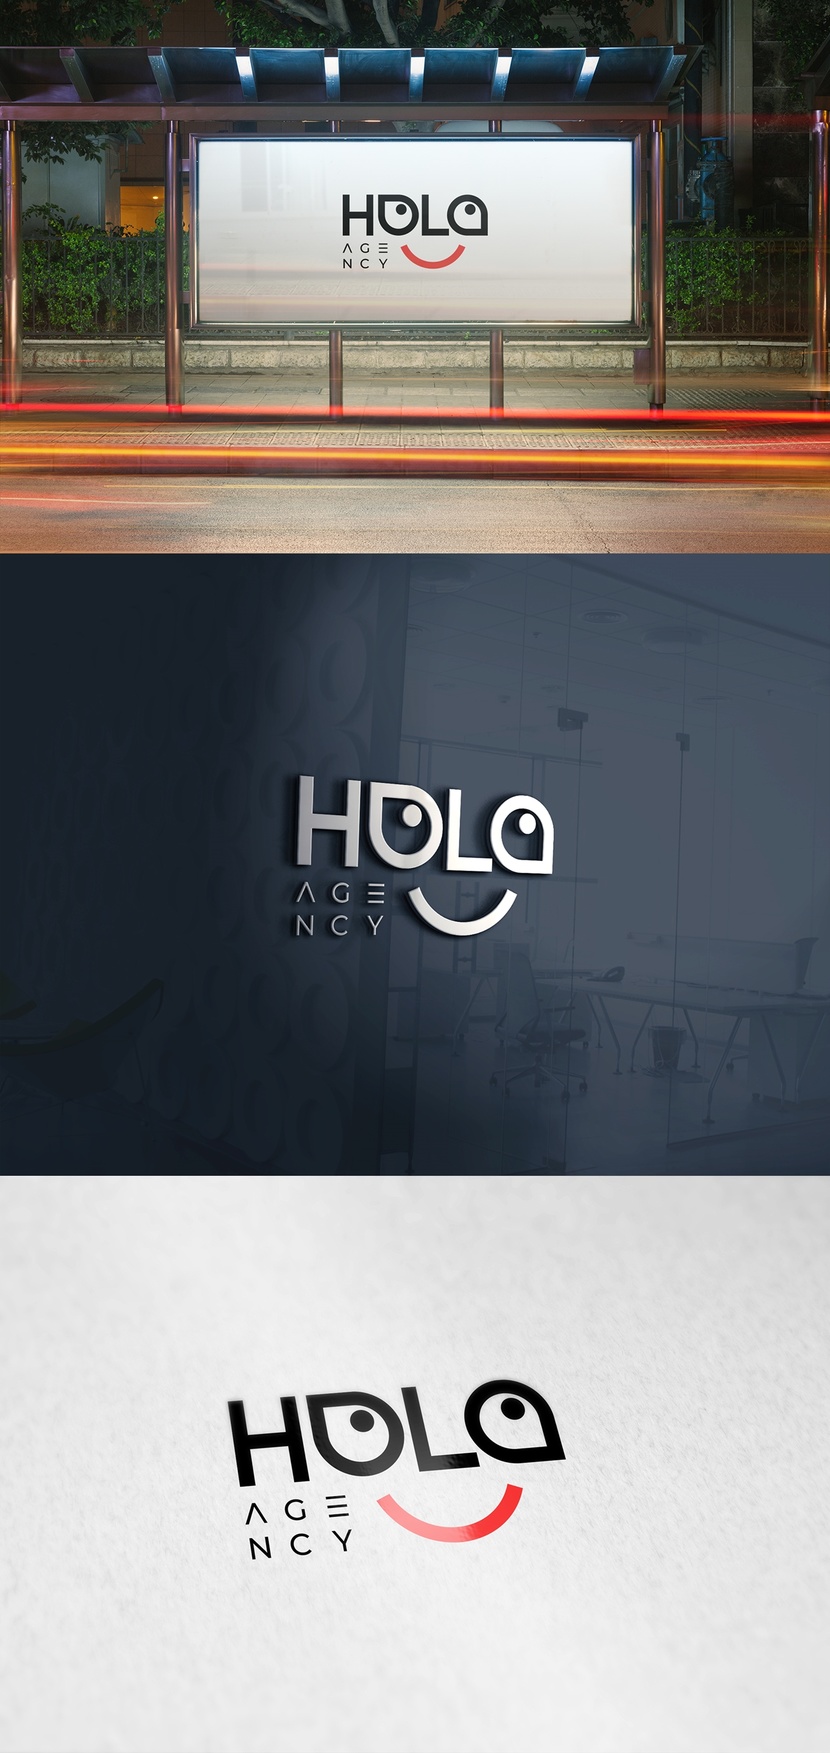 HOLA смотрит вверх и вправо, намекая на рост прибыли своих клиентов, как результат успешной деятельности маркетингового агентства - Разработка логотипа для SMM-агентства "HOLA"